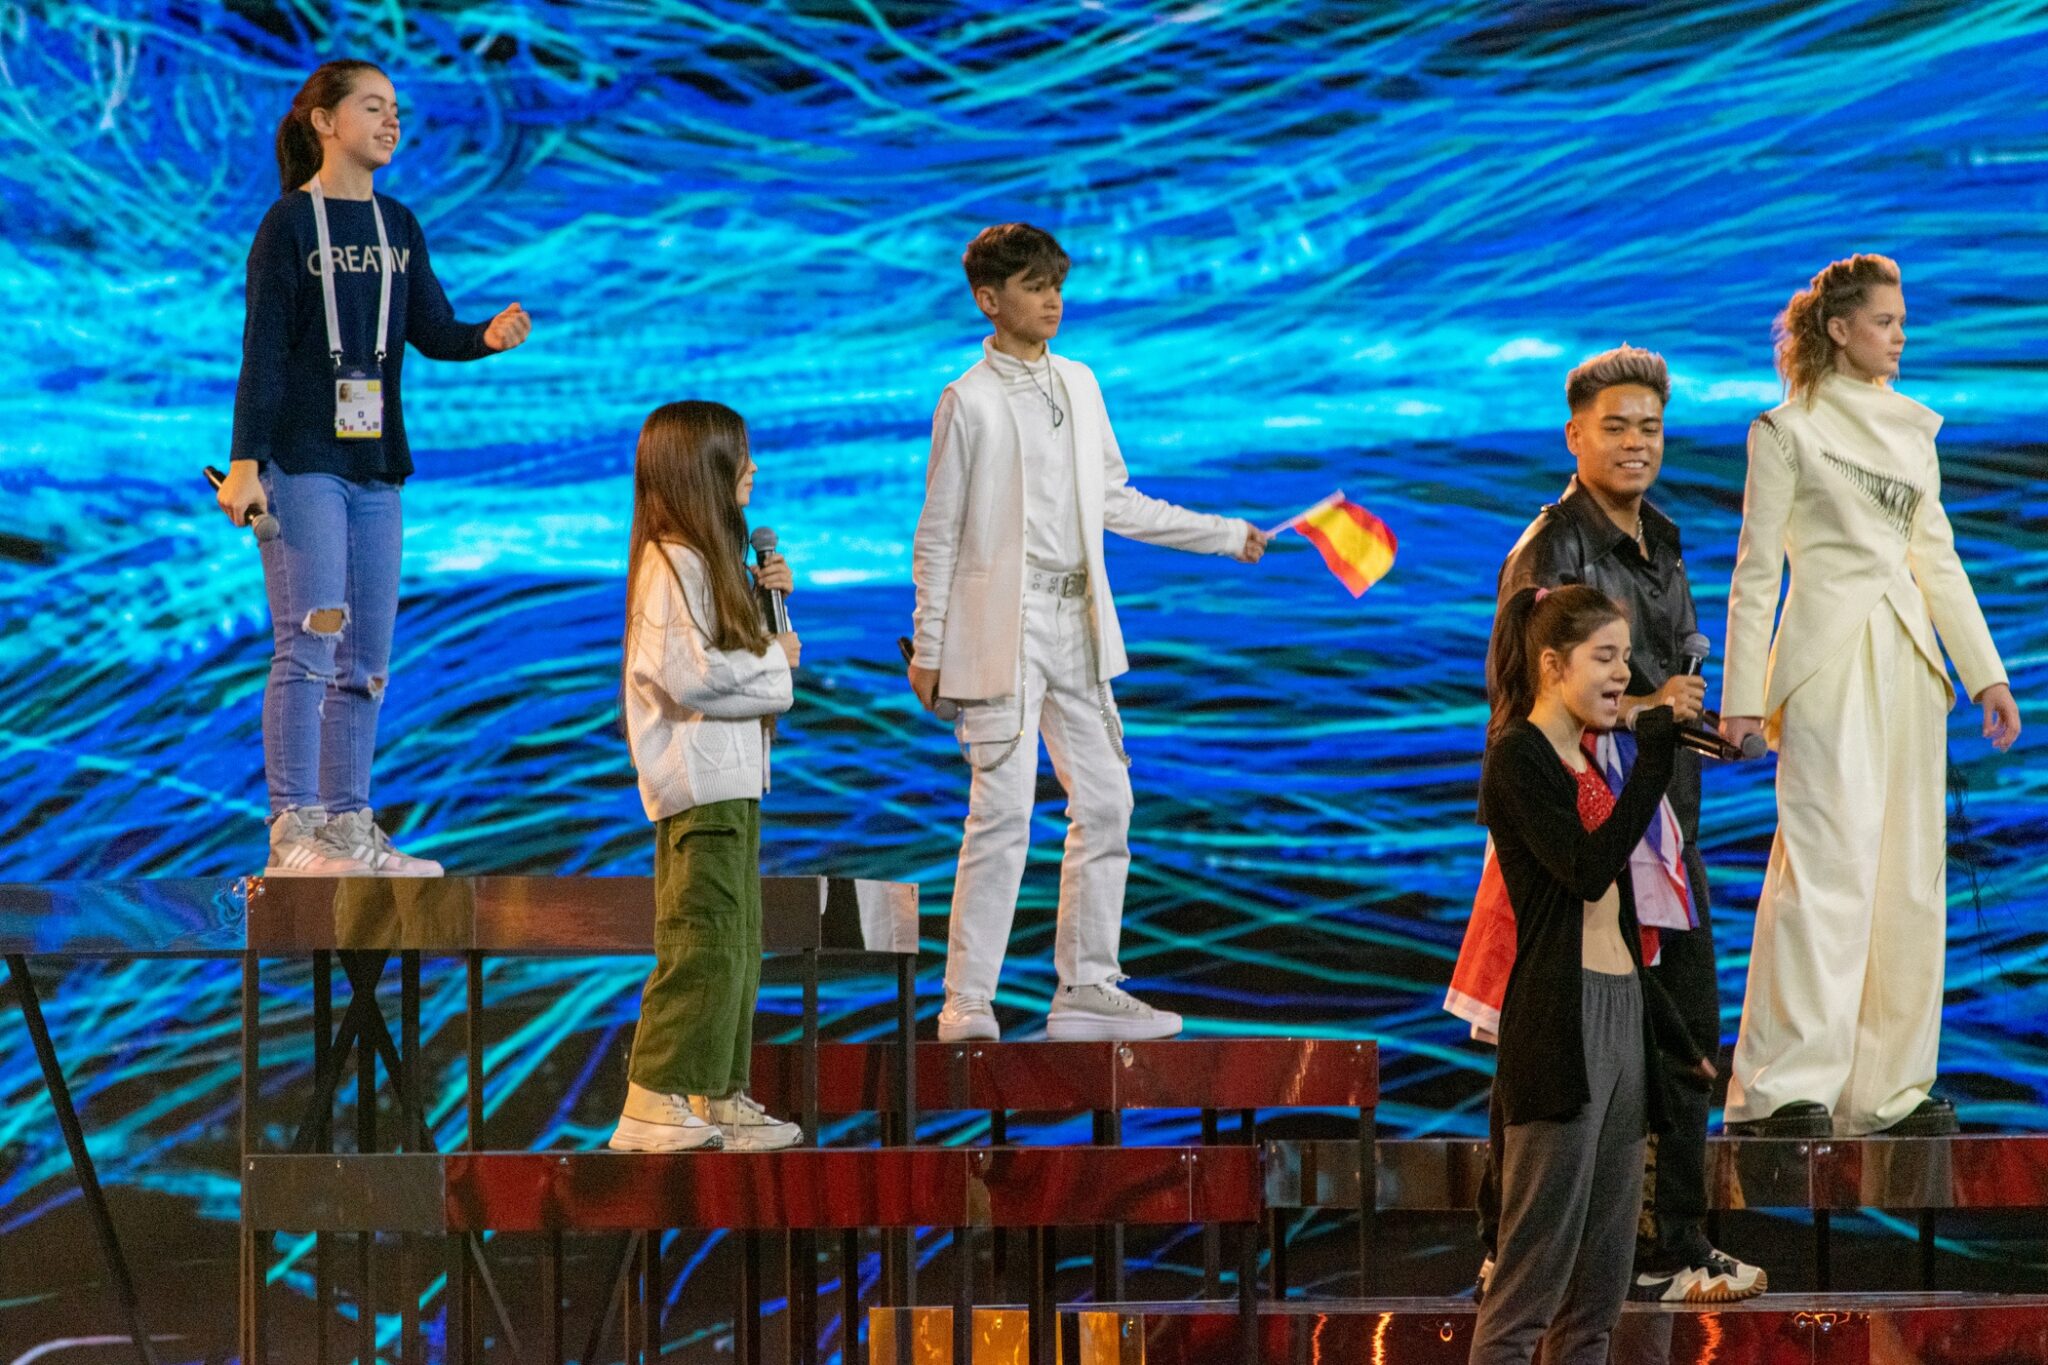 Descubre todos los datos curiosos y récords batidos en Eurovisión Junior 2022